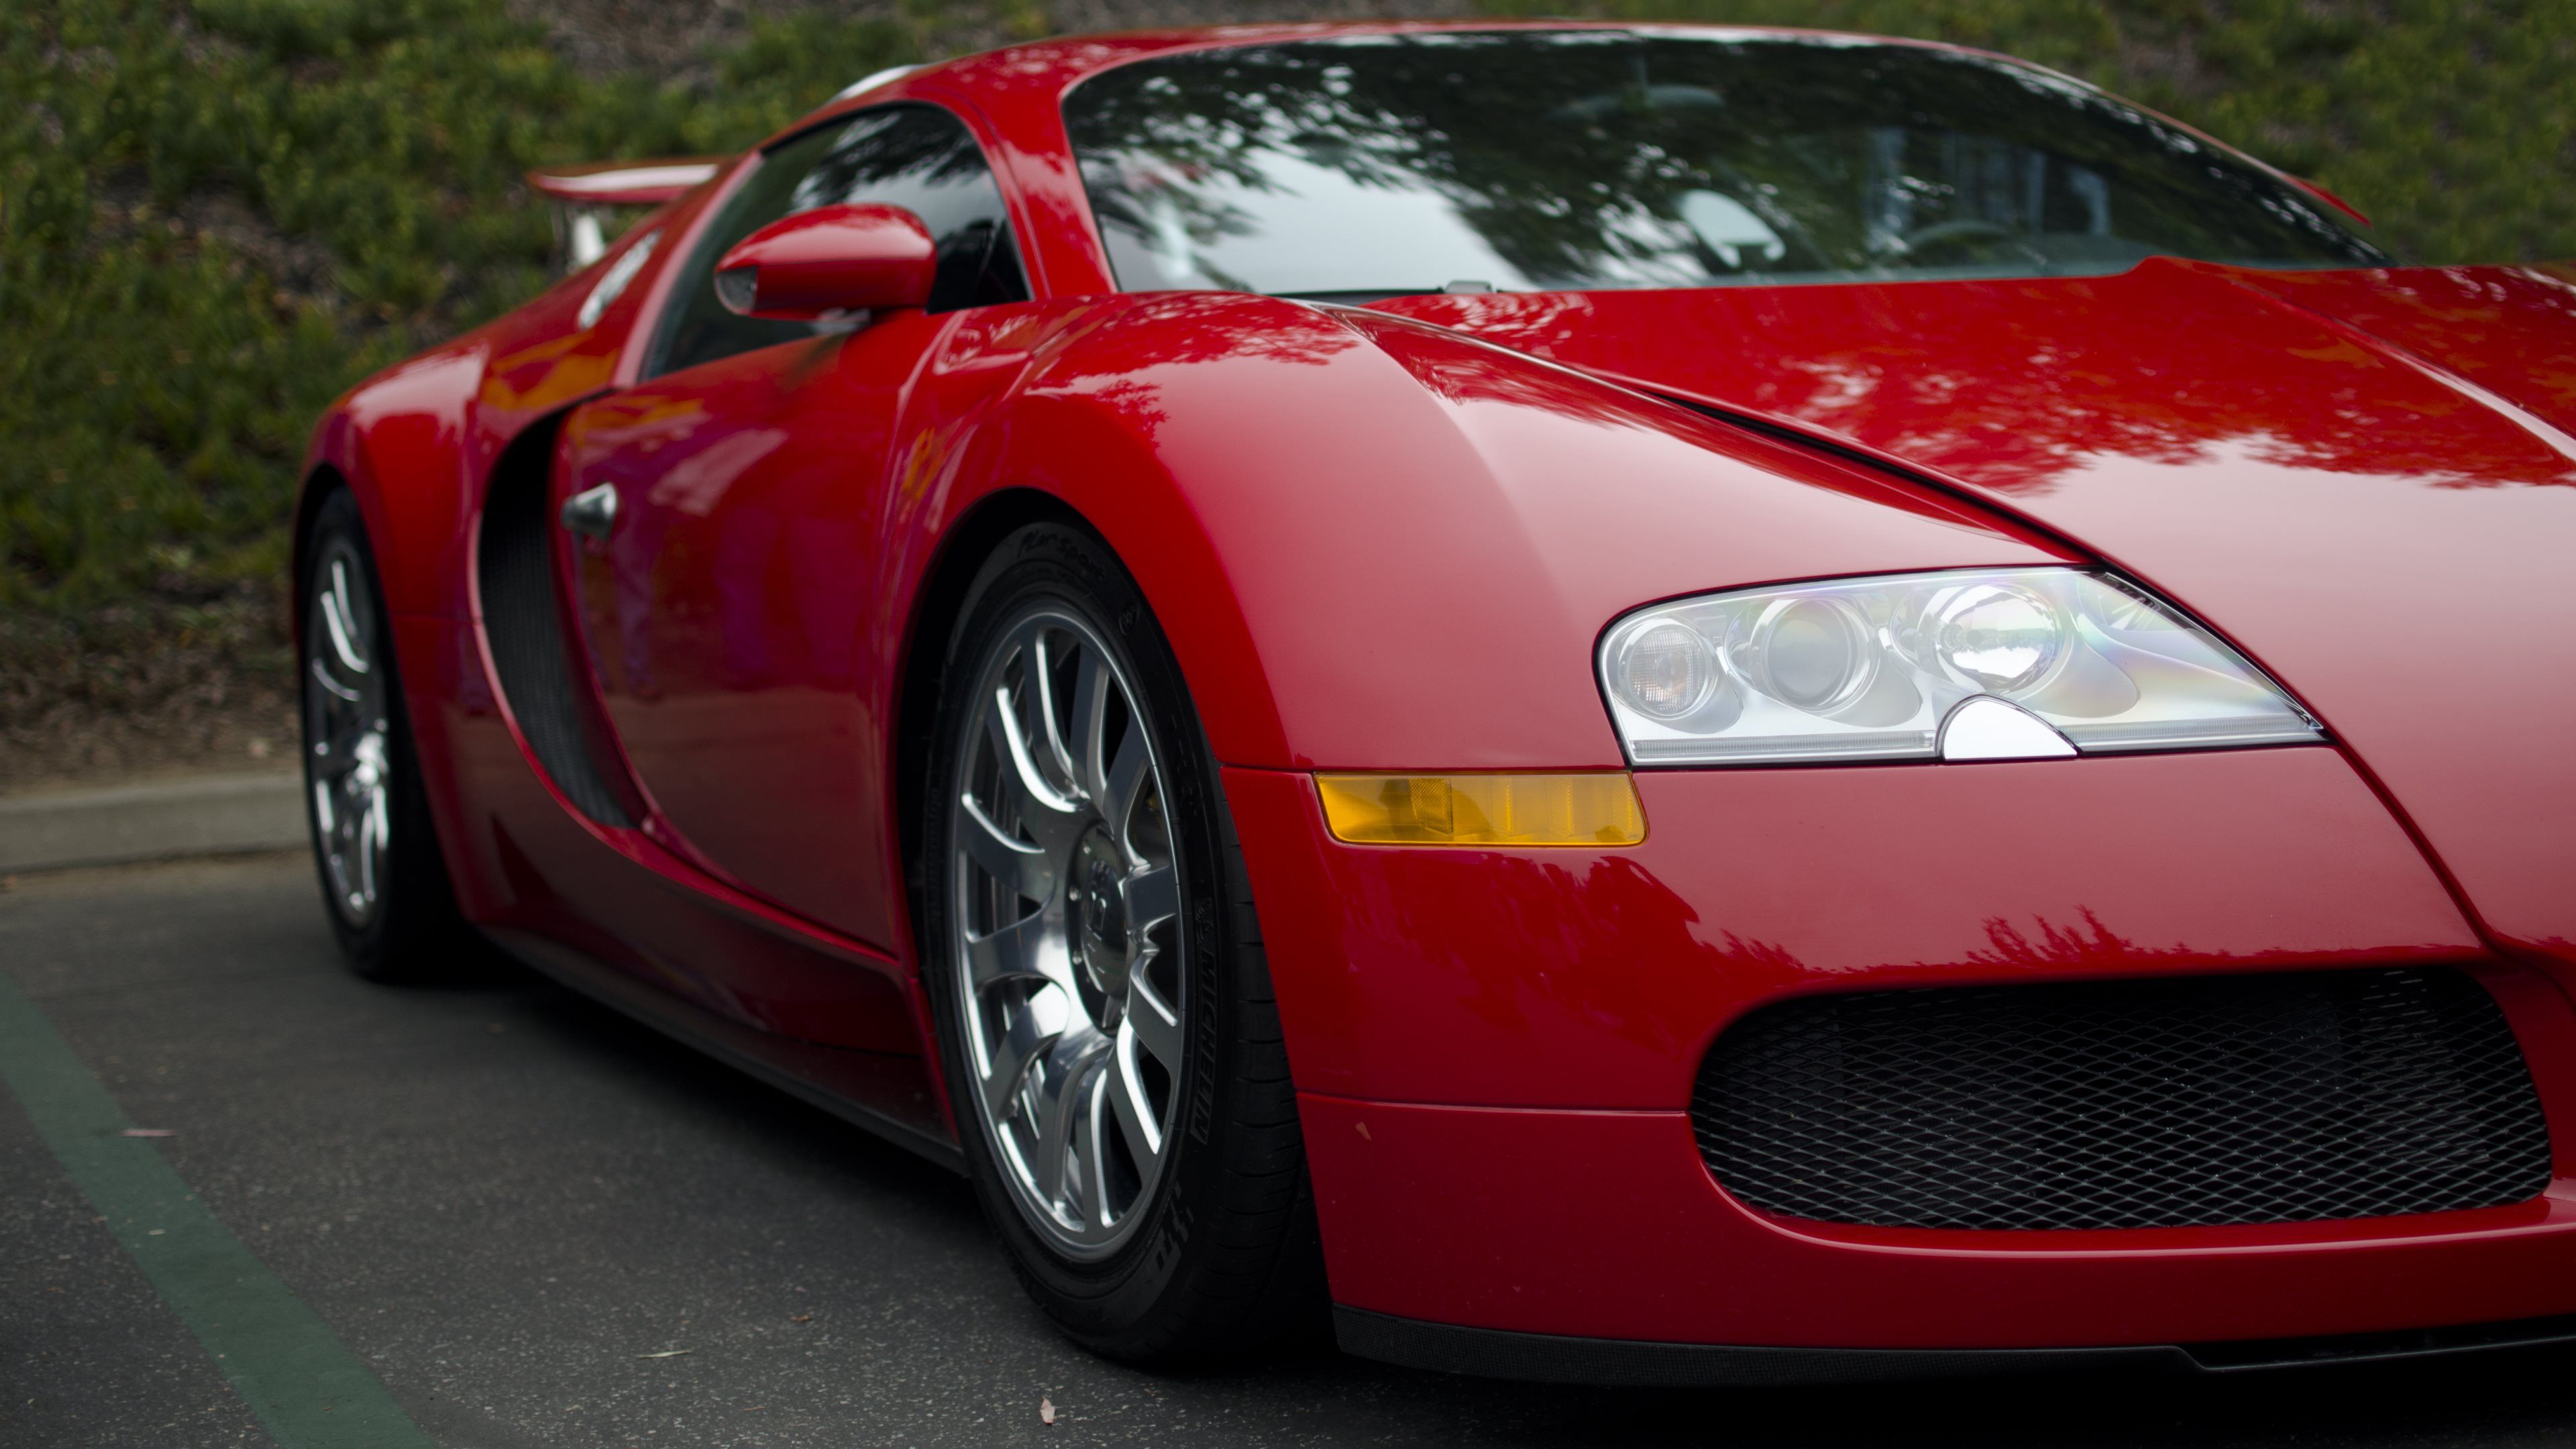 Red Bugatti Car Widescreen Wallpaper 67200 3840x2160px